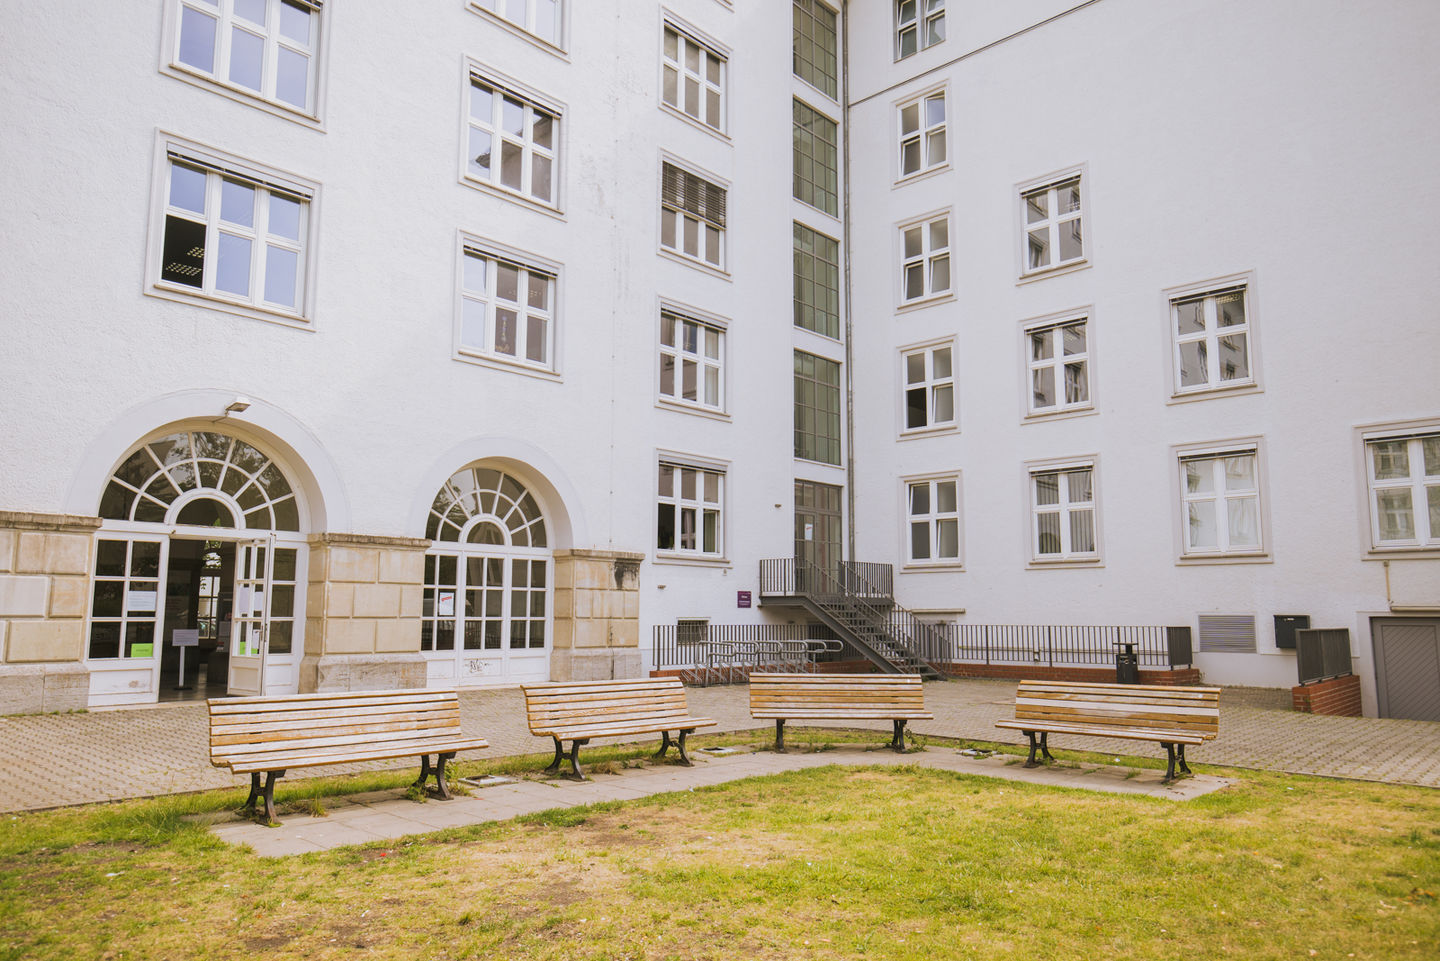 Studium am Campus Schöneberg der HWR Berlin: Innenhof zwischen Haus B (rückseitig) und Haus C. Foto: Oana Popa-Costea